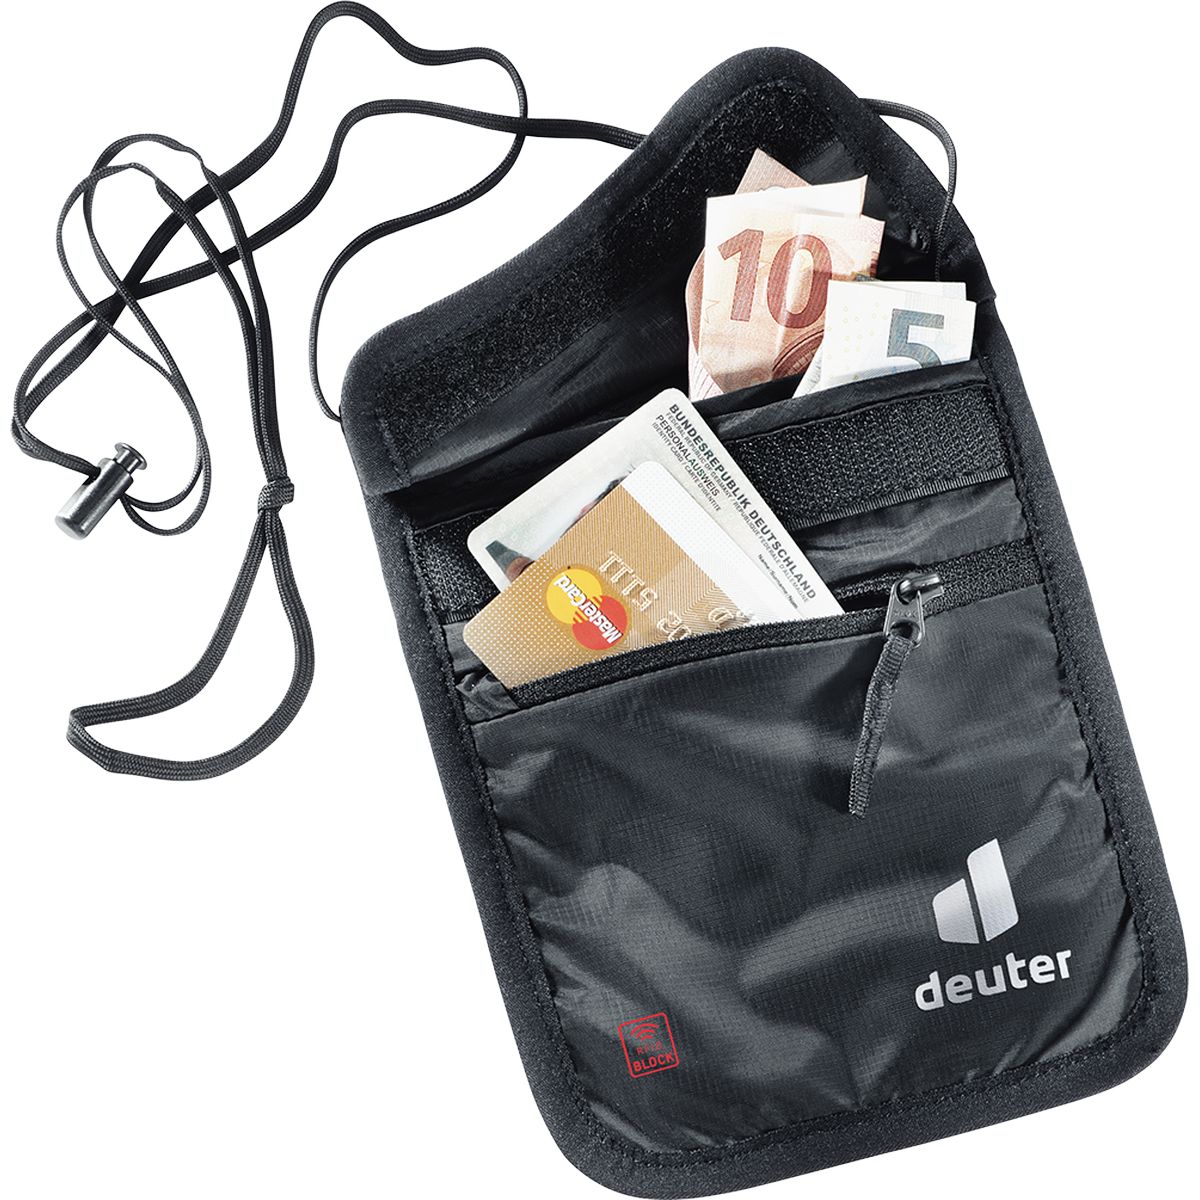 Deuter Security Wallet II RFID BLOCK Brustbeutel